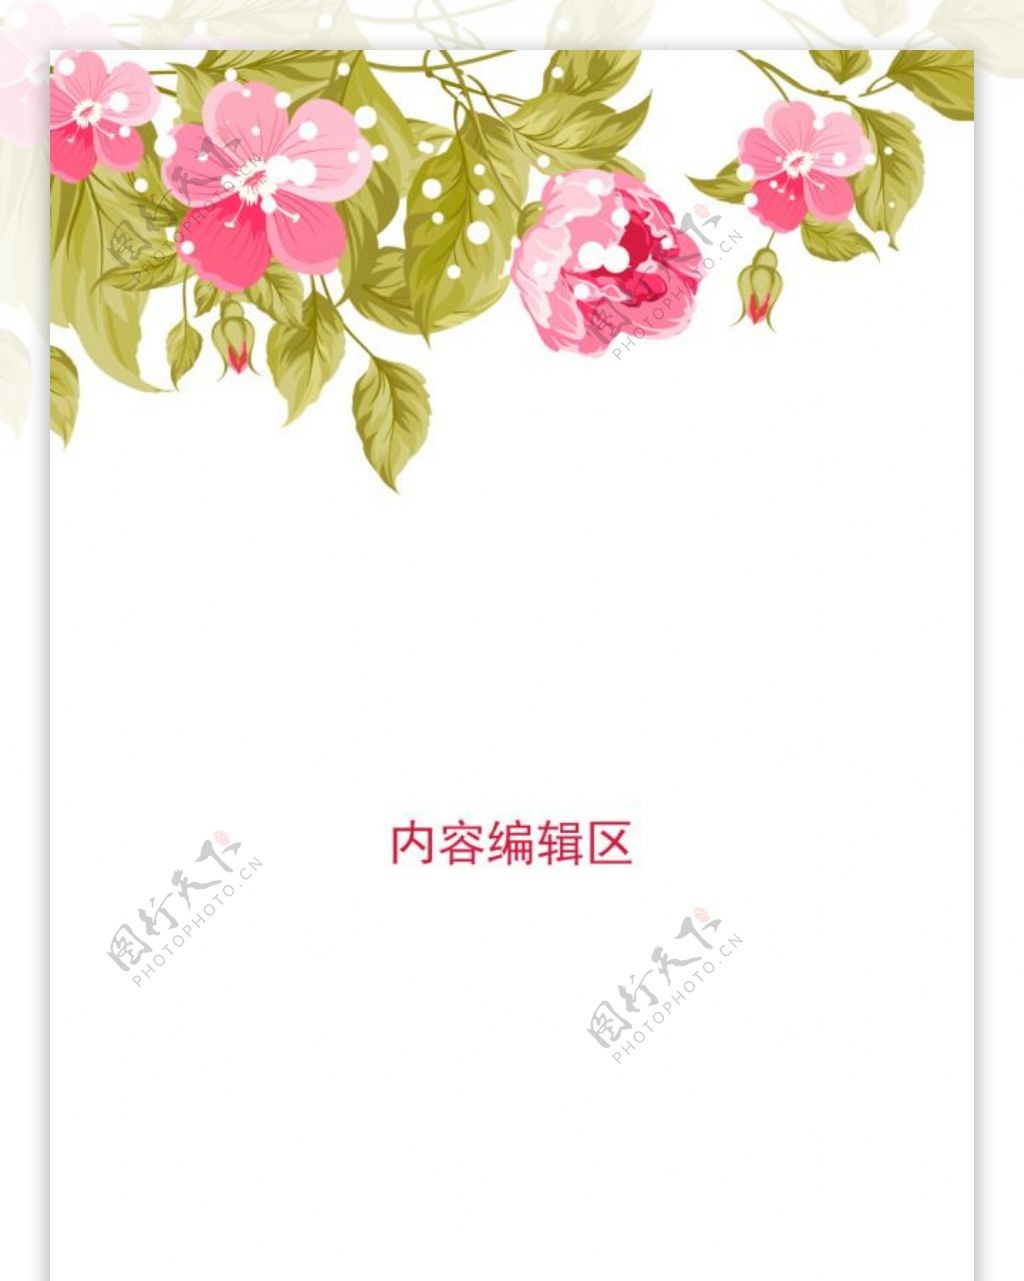 精美粉色花儿展架设计模板素材海报画面